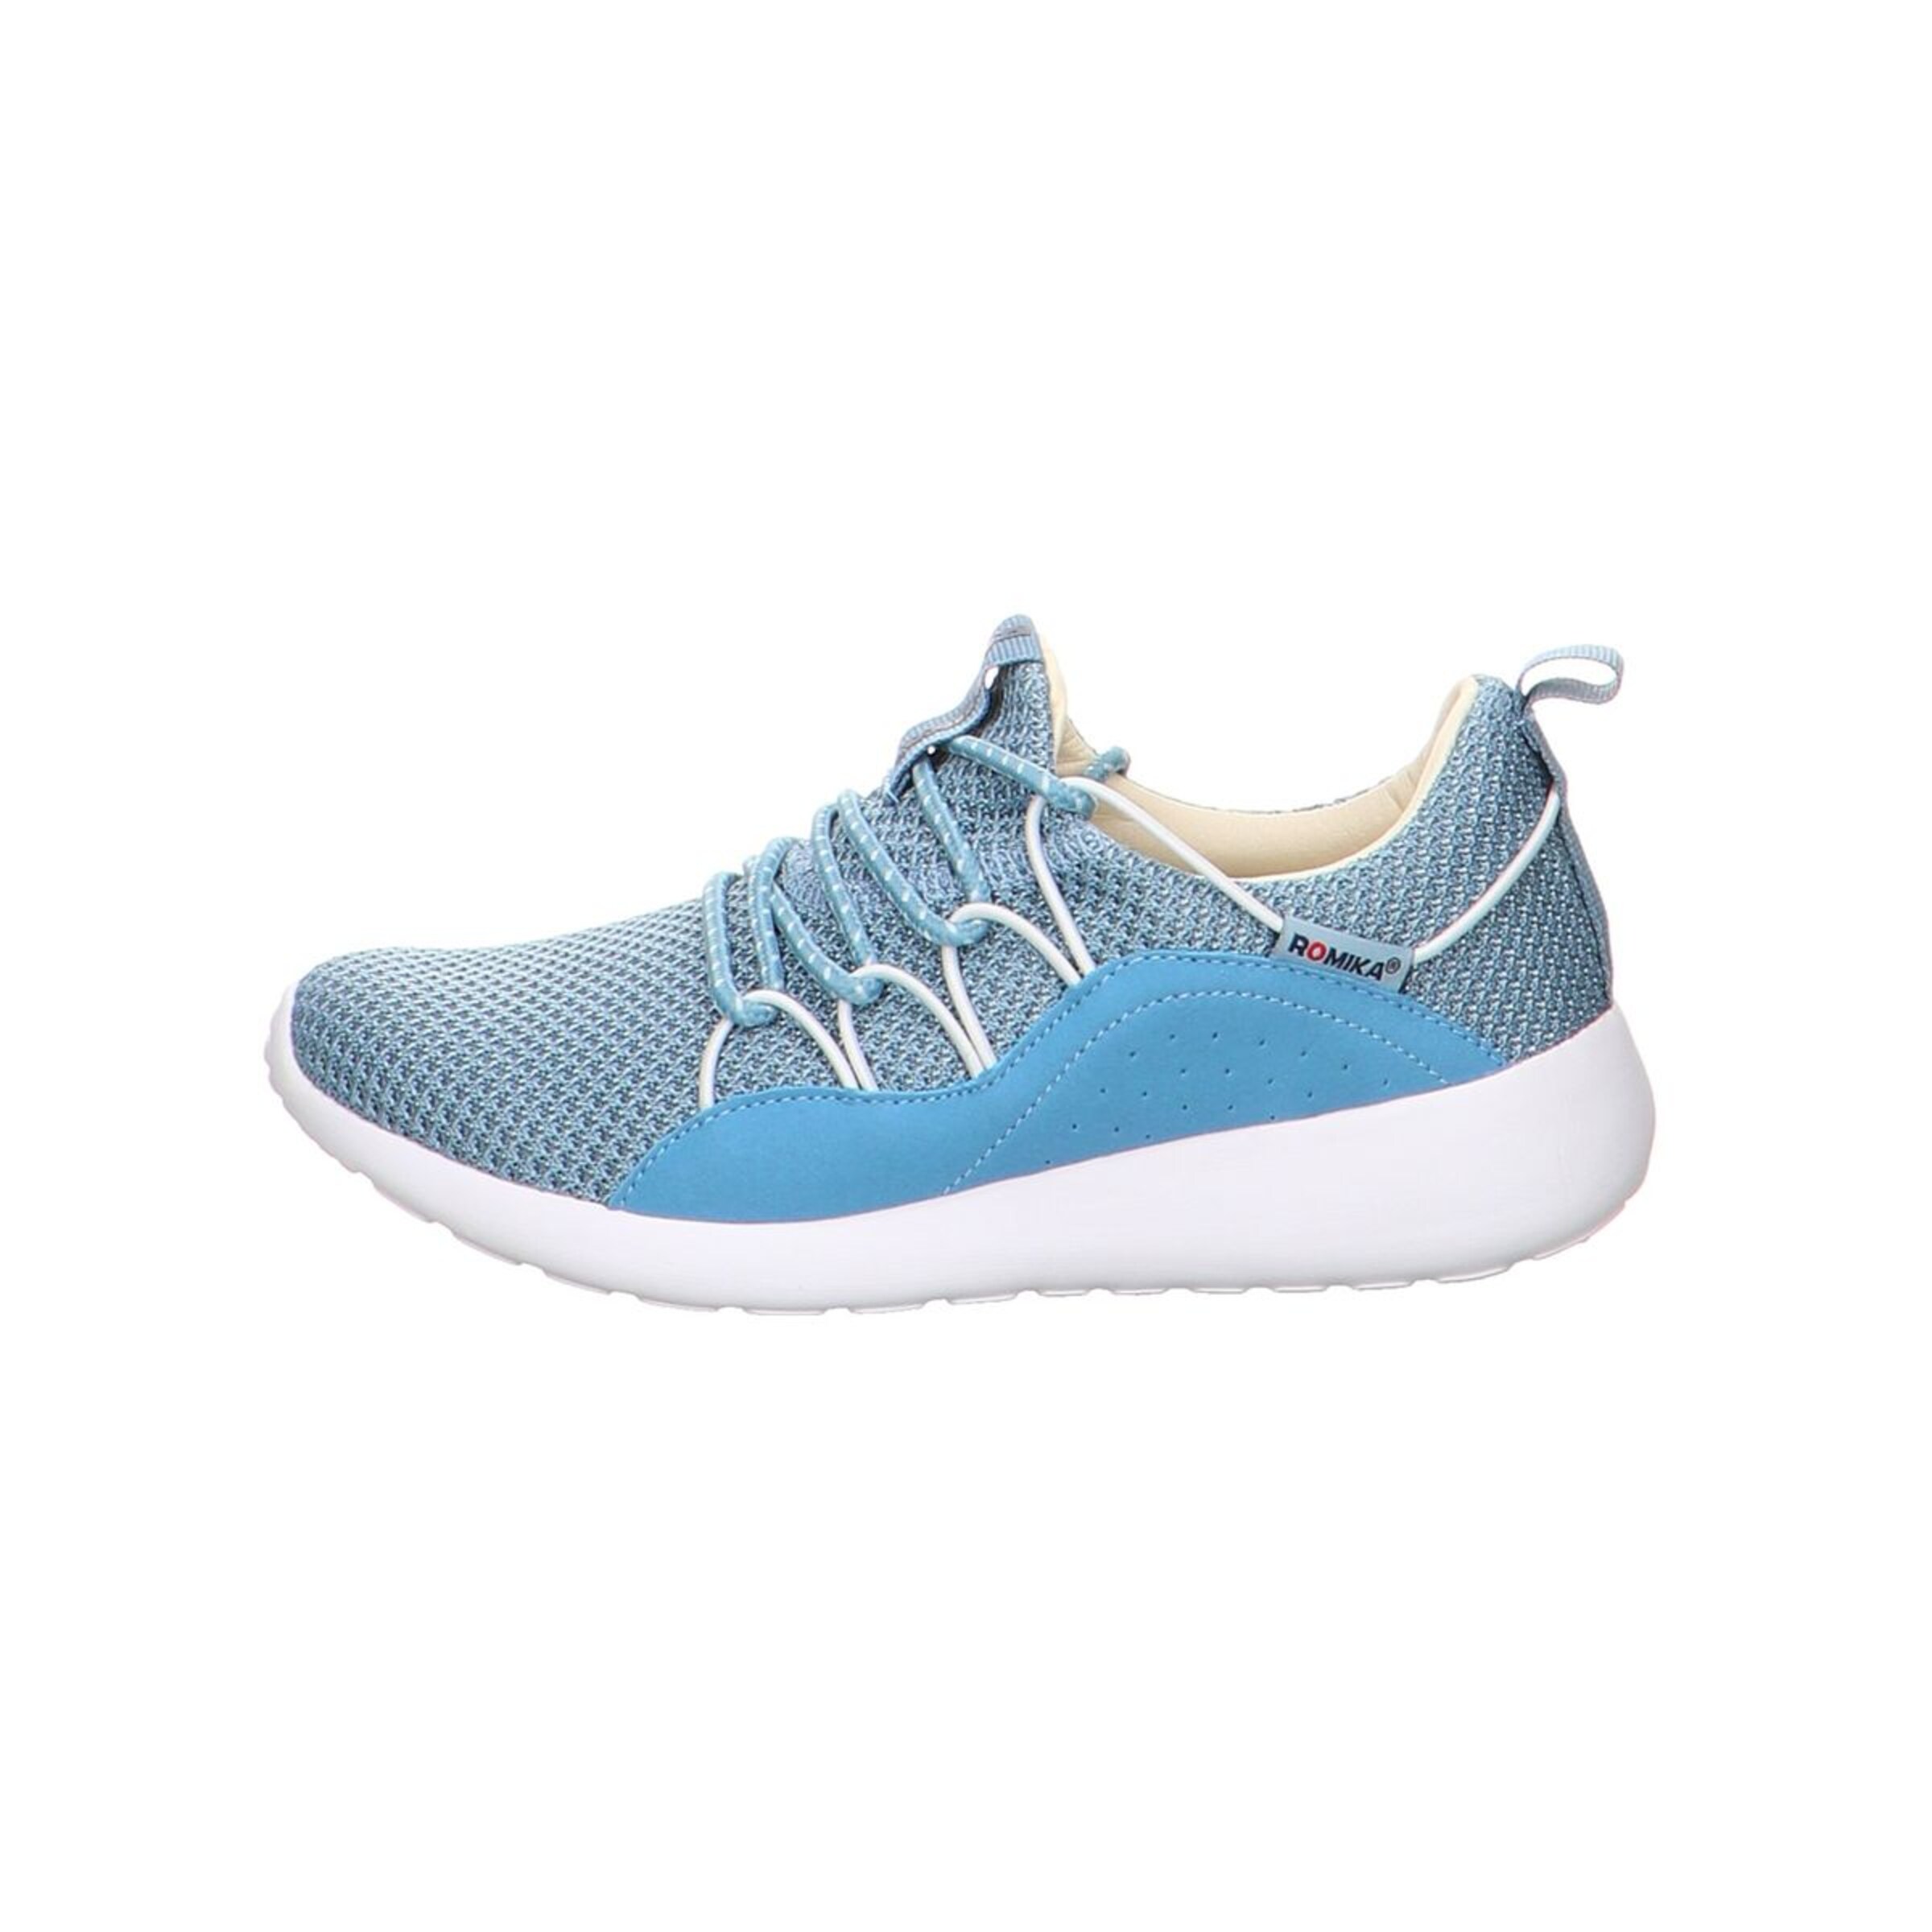 Frauen Sneaker ROMIKA Sneakers in Blau, Hellblau - GR63218